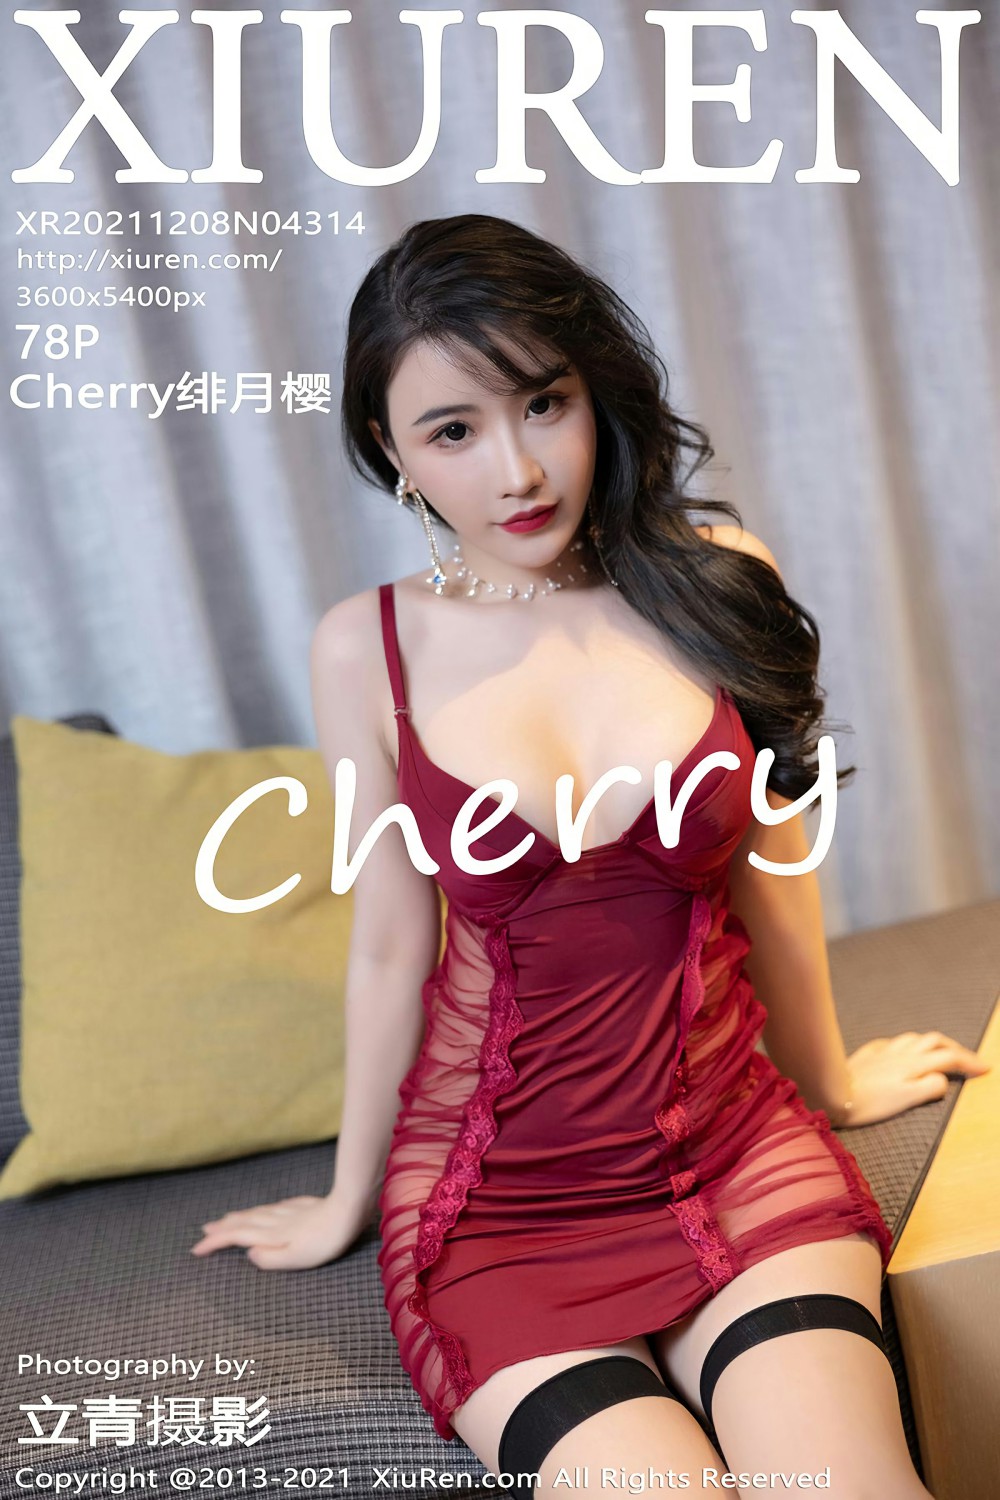 [XiuRen秀人网] 2021.12.08 No.4314 Cherry绯月樱 红色睡衣